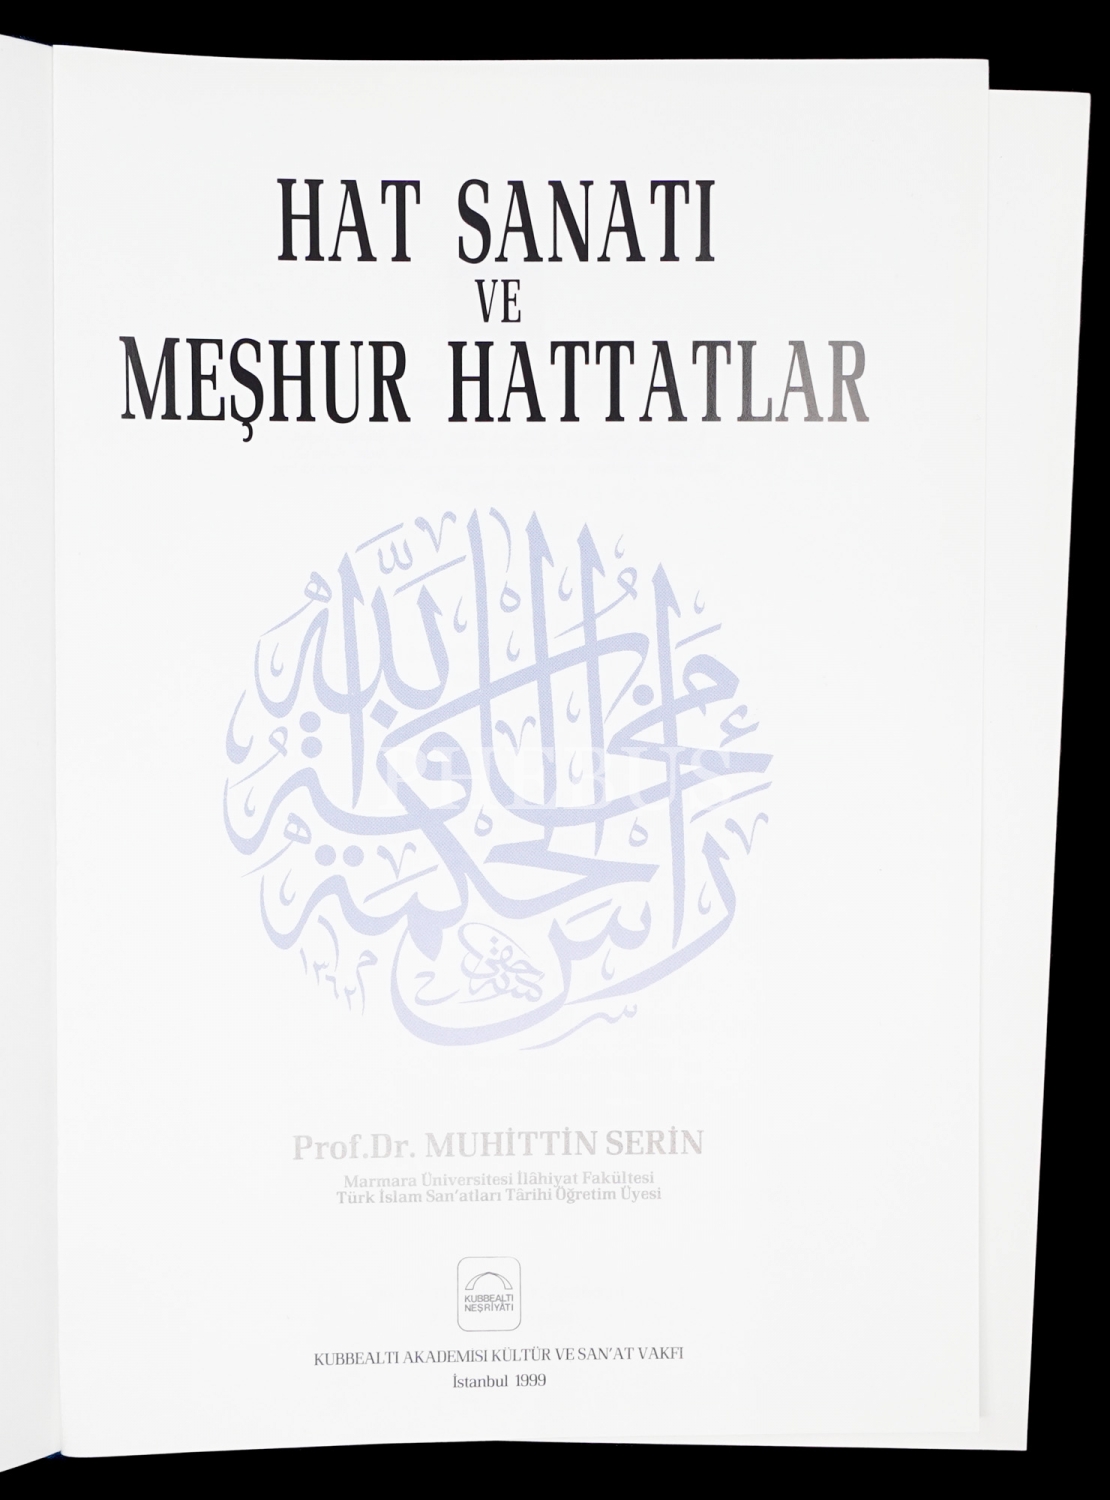 HAT SANATI VE MEŞHUR HATTATLAR, Muhittin Serin, 1999, Kubbealtı Akademisi Kültür ve Sanat Vakfı, 327 sayfa, 22x31 cm...